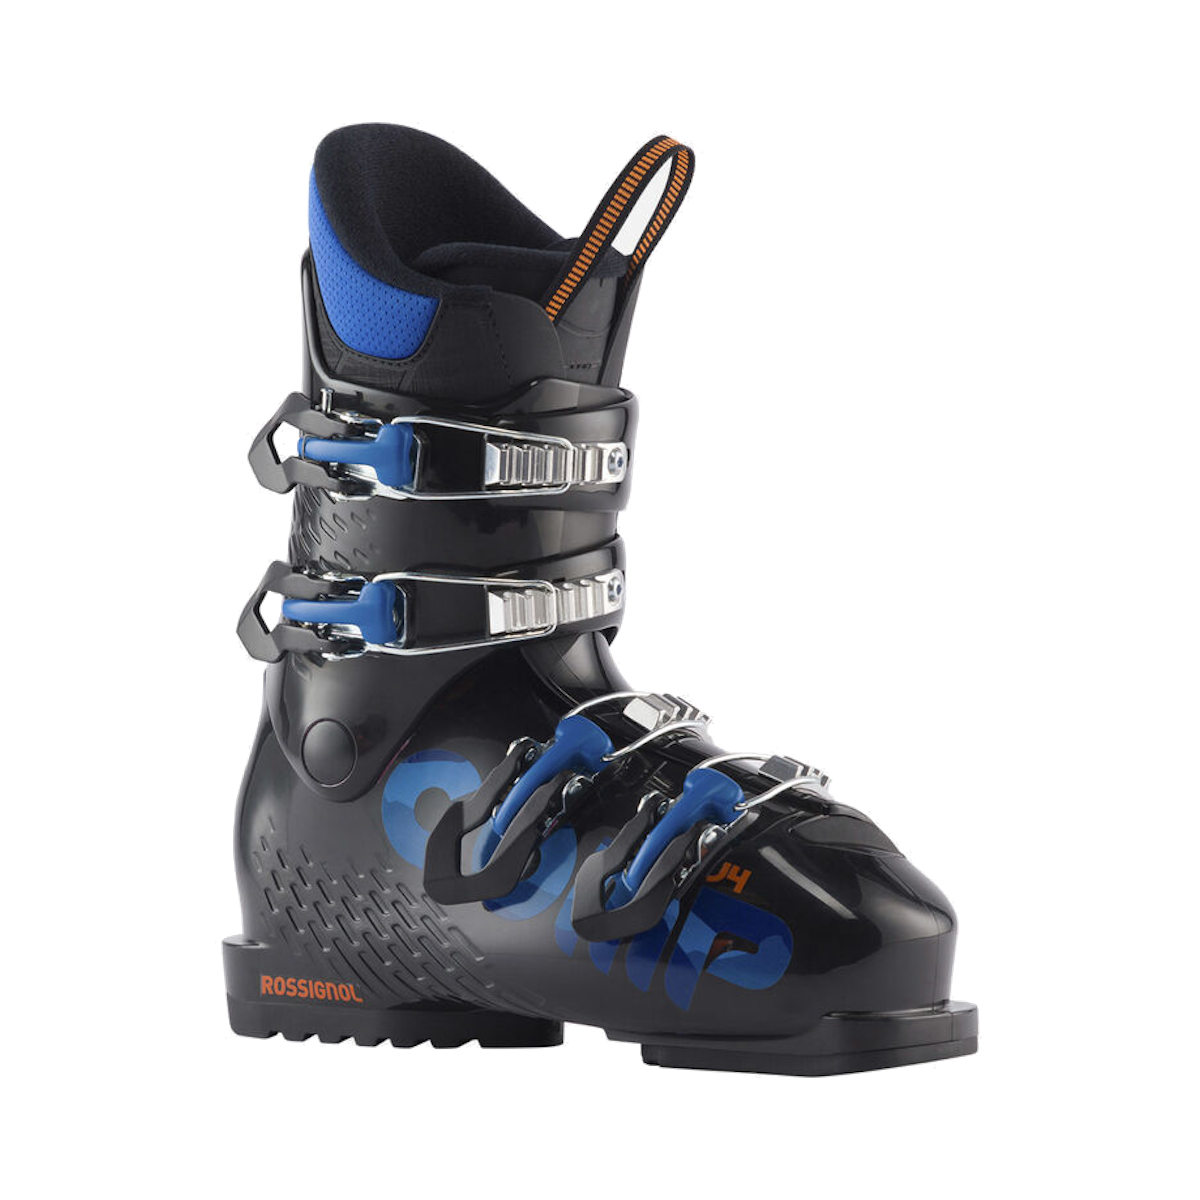 ROSSIGNOL COMP J4 alpine ski boots - black